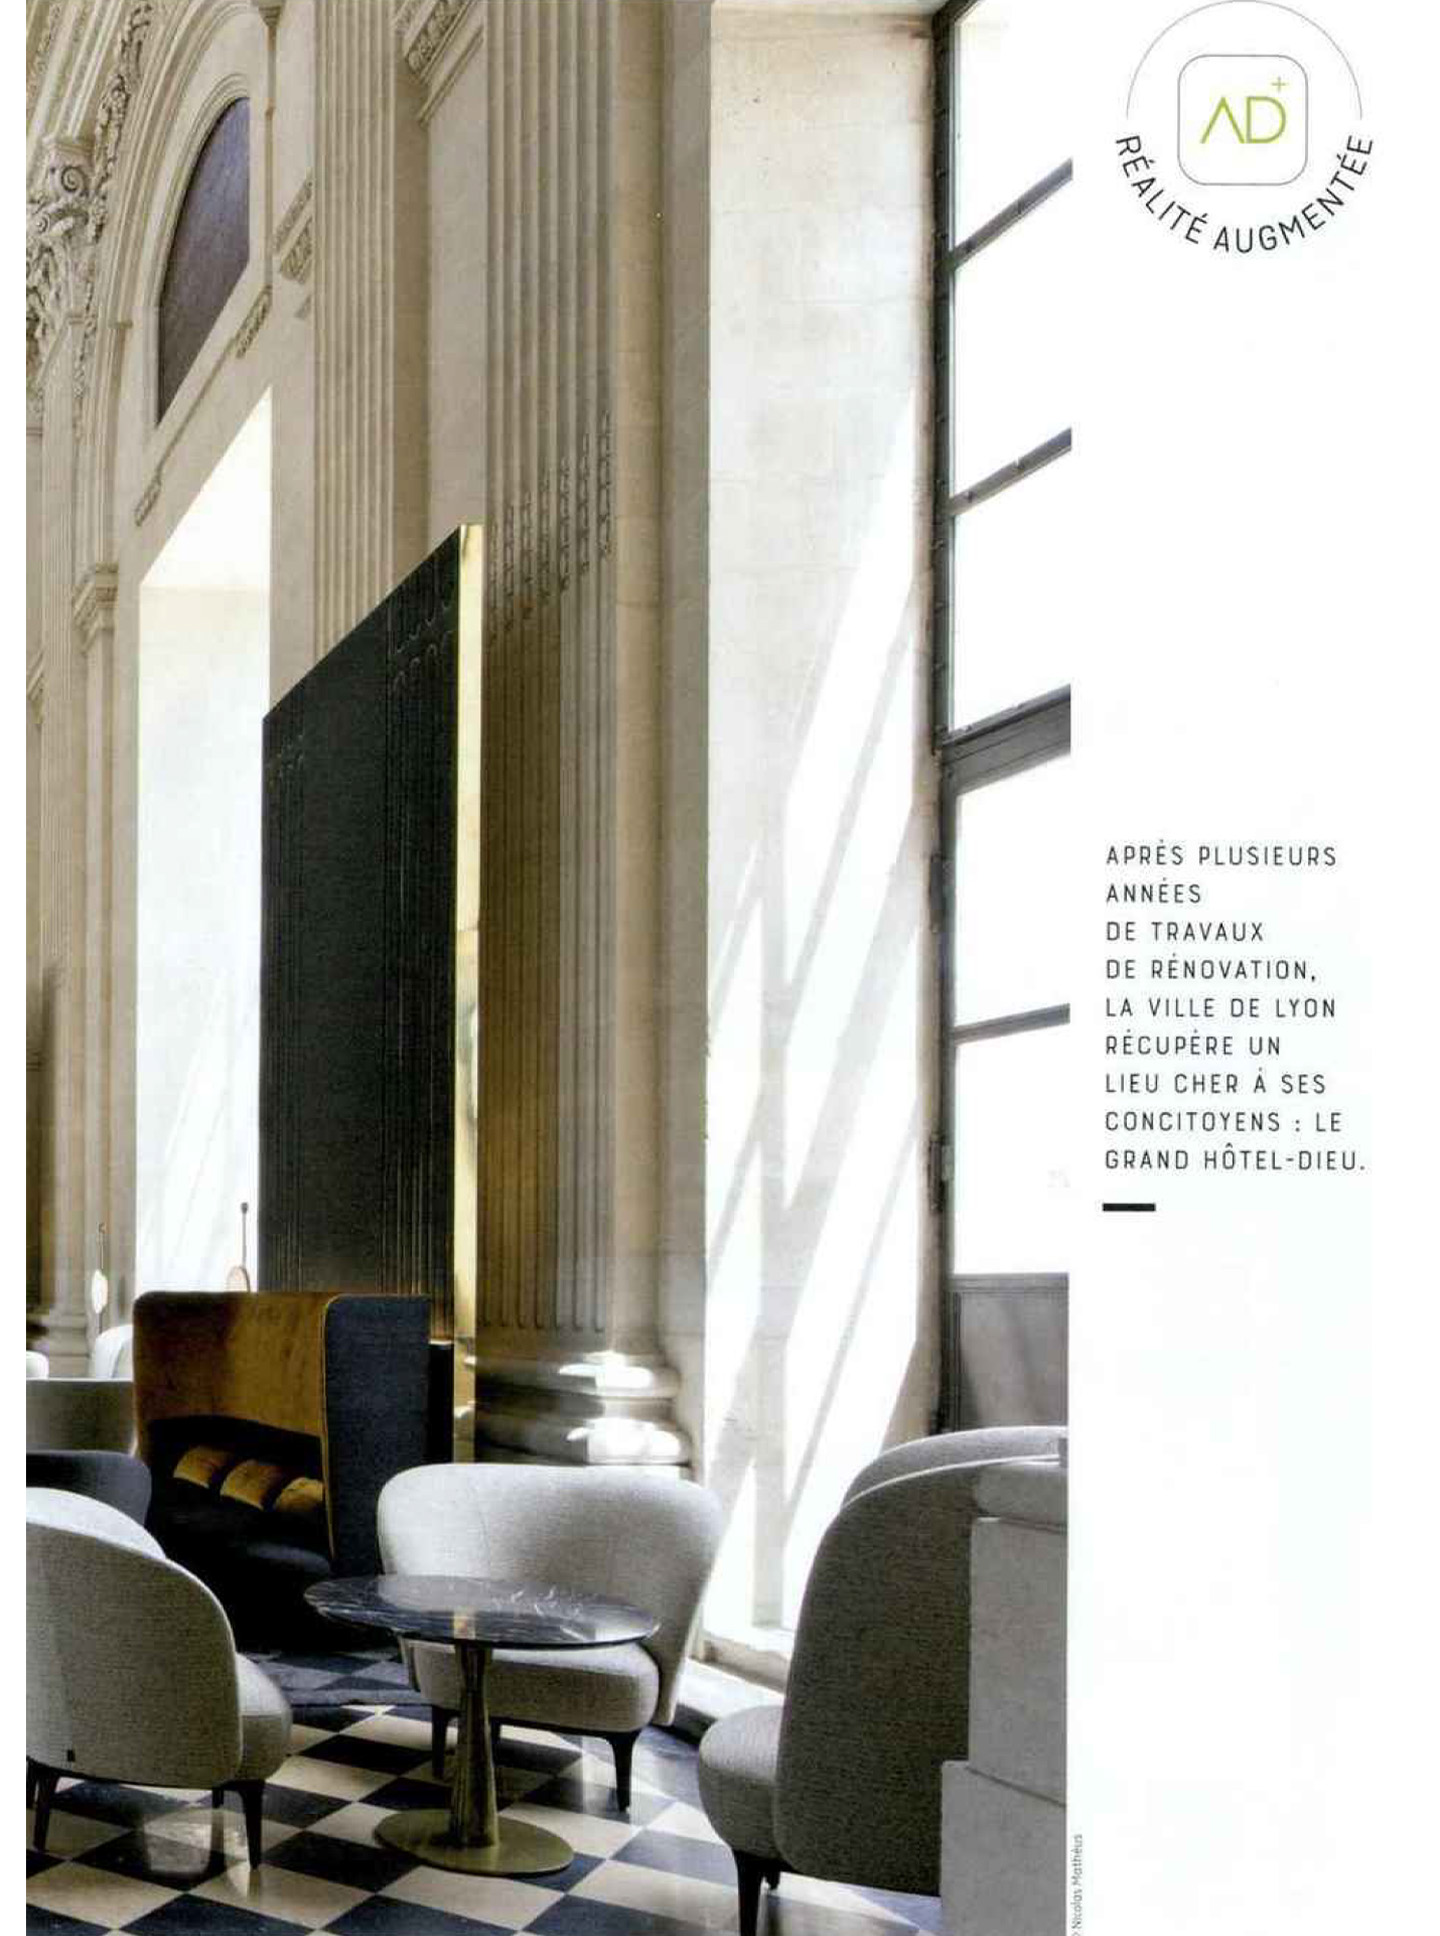 Article sur l'InterContinental Lyon Hotel Dieu réalisé par le studio jean-Philippe Nuel dans le magazine NDA, nouvel hotel de luxe, architecture d'intérieur de luxe, patrimoine historique